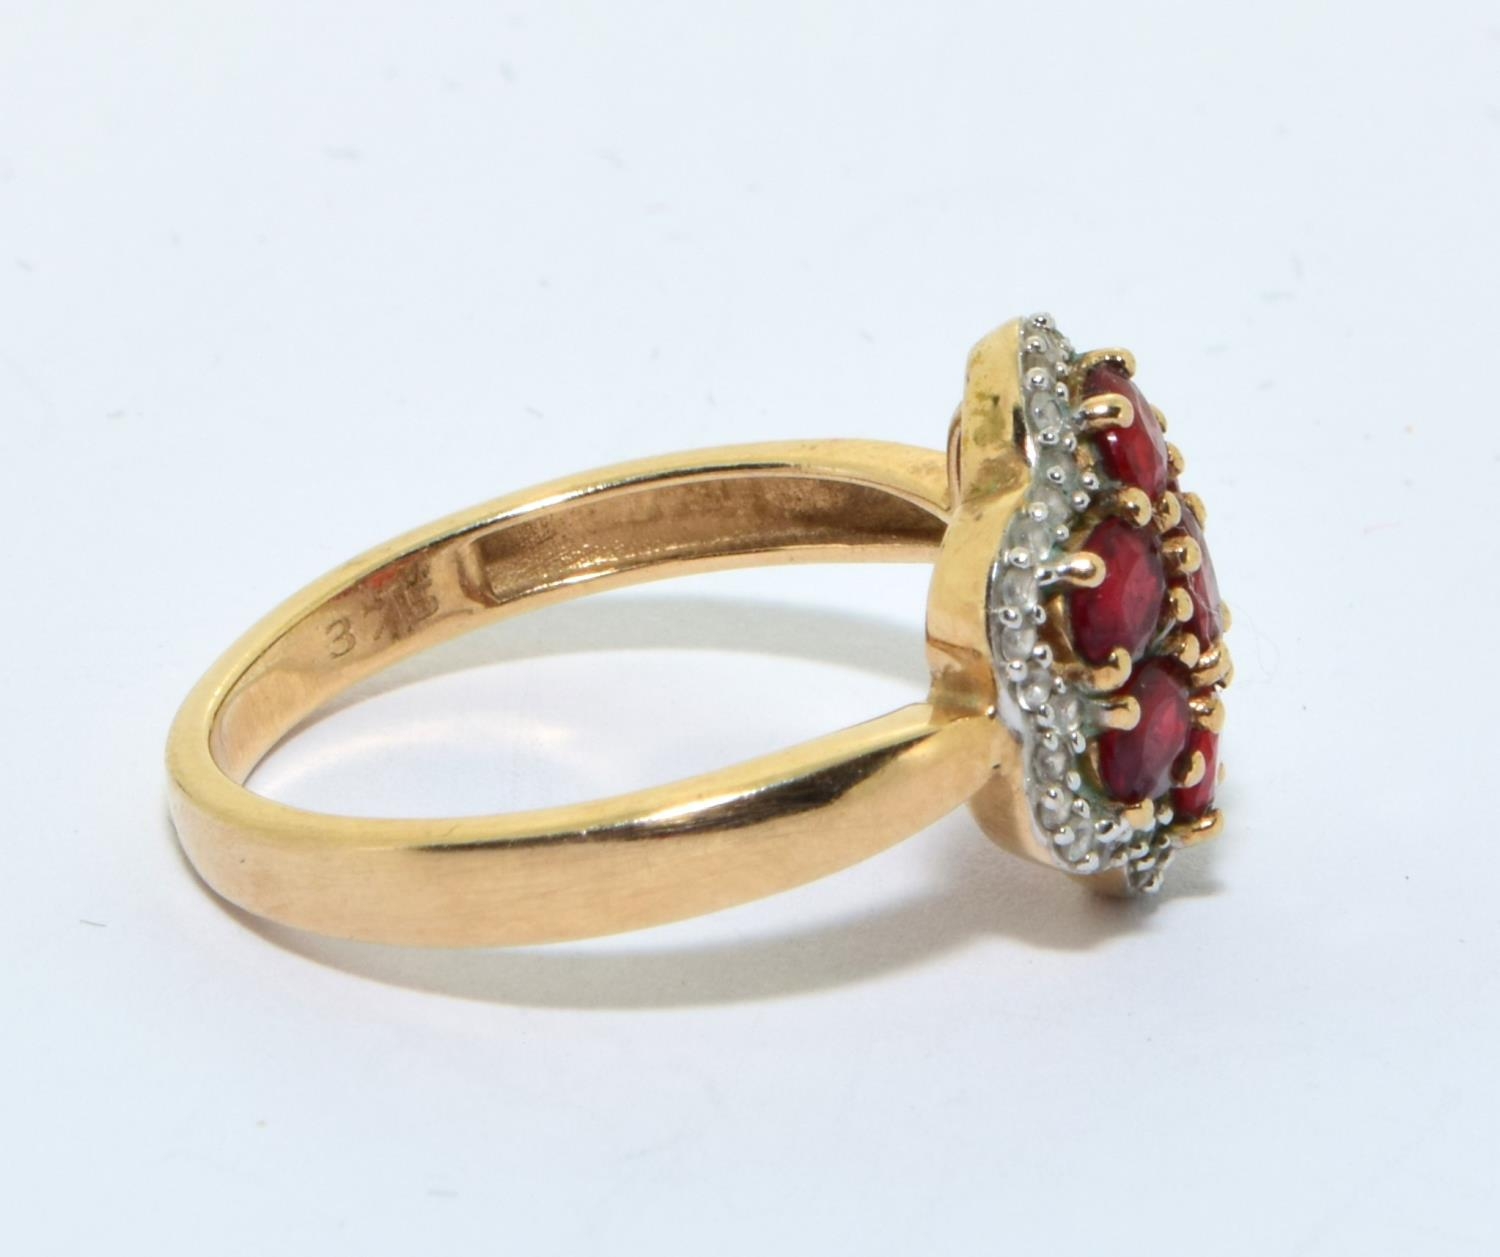 9ct gold ladies Garnet design halo ring size N - Image 4 of 5